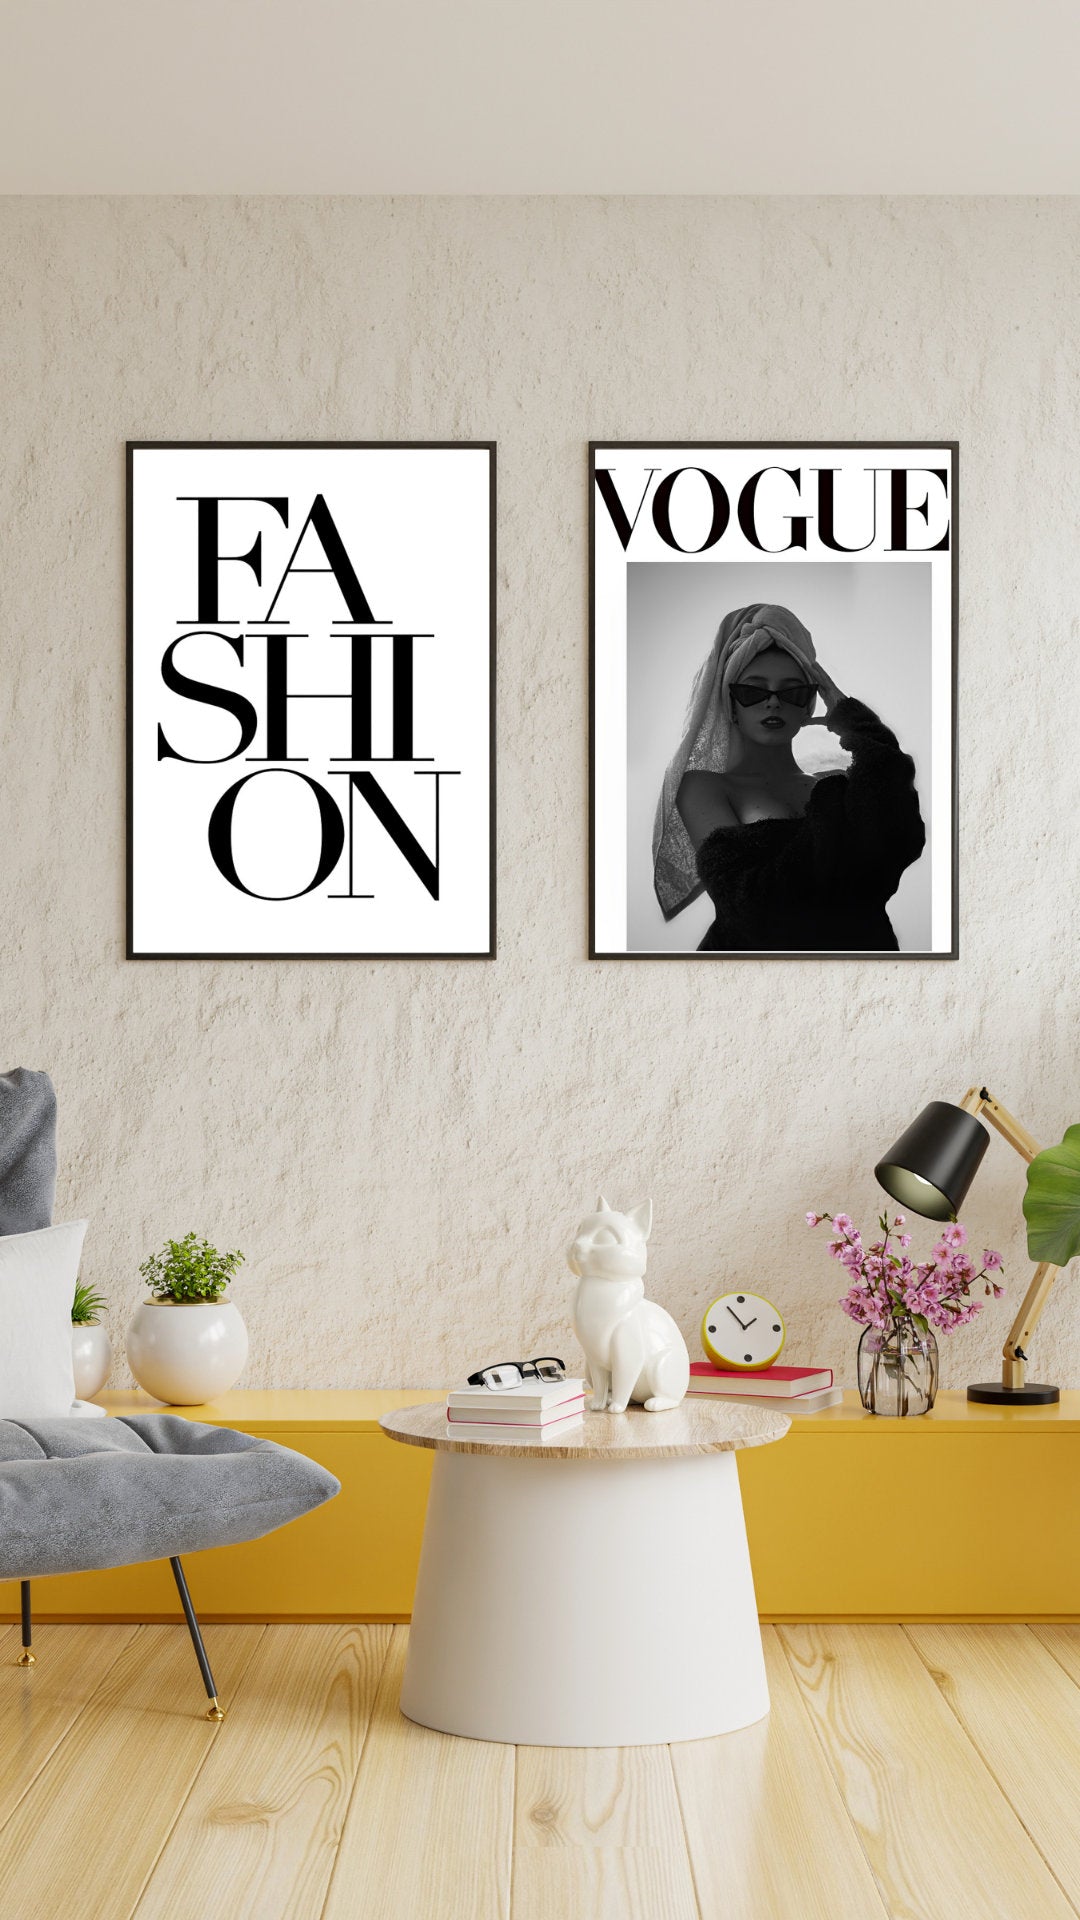 Wall Art Print, Vogue